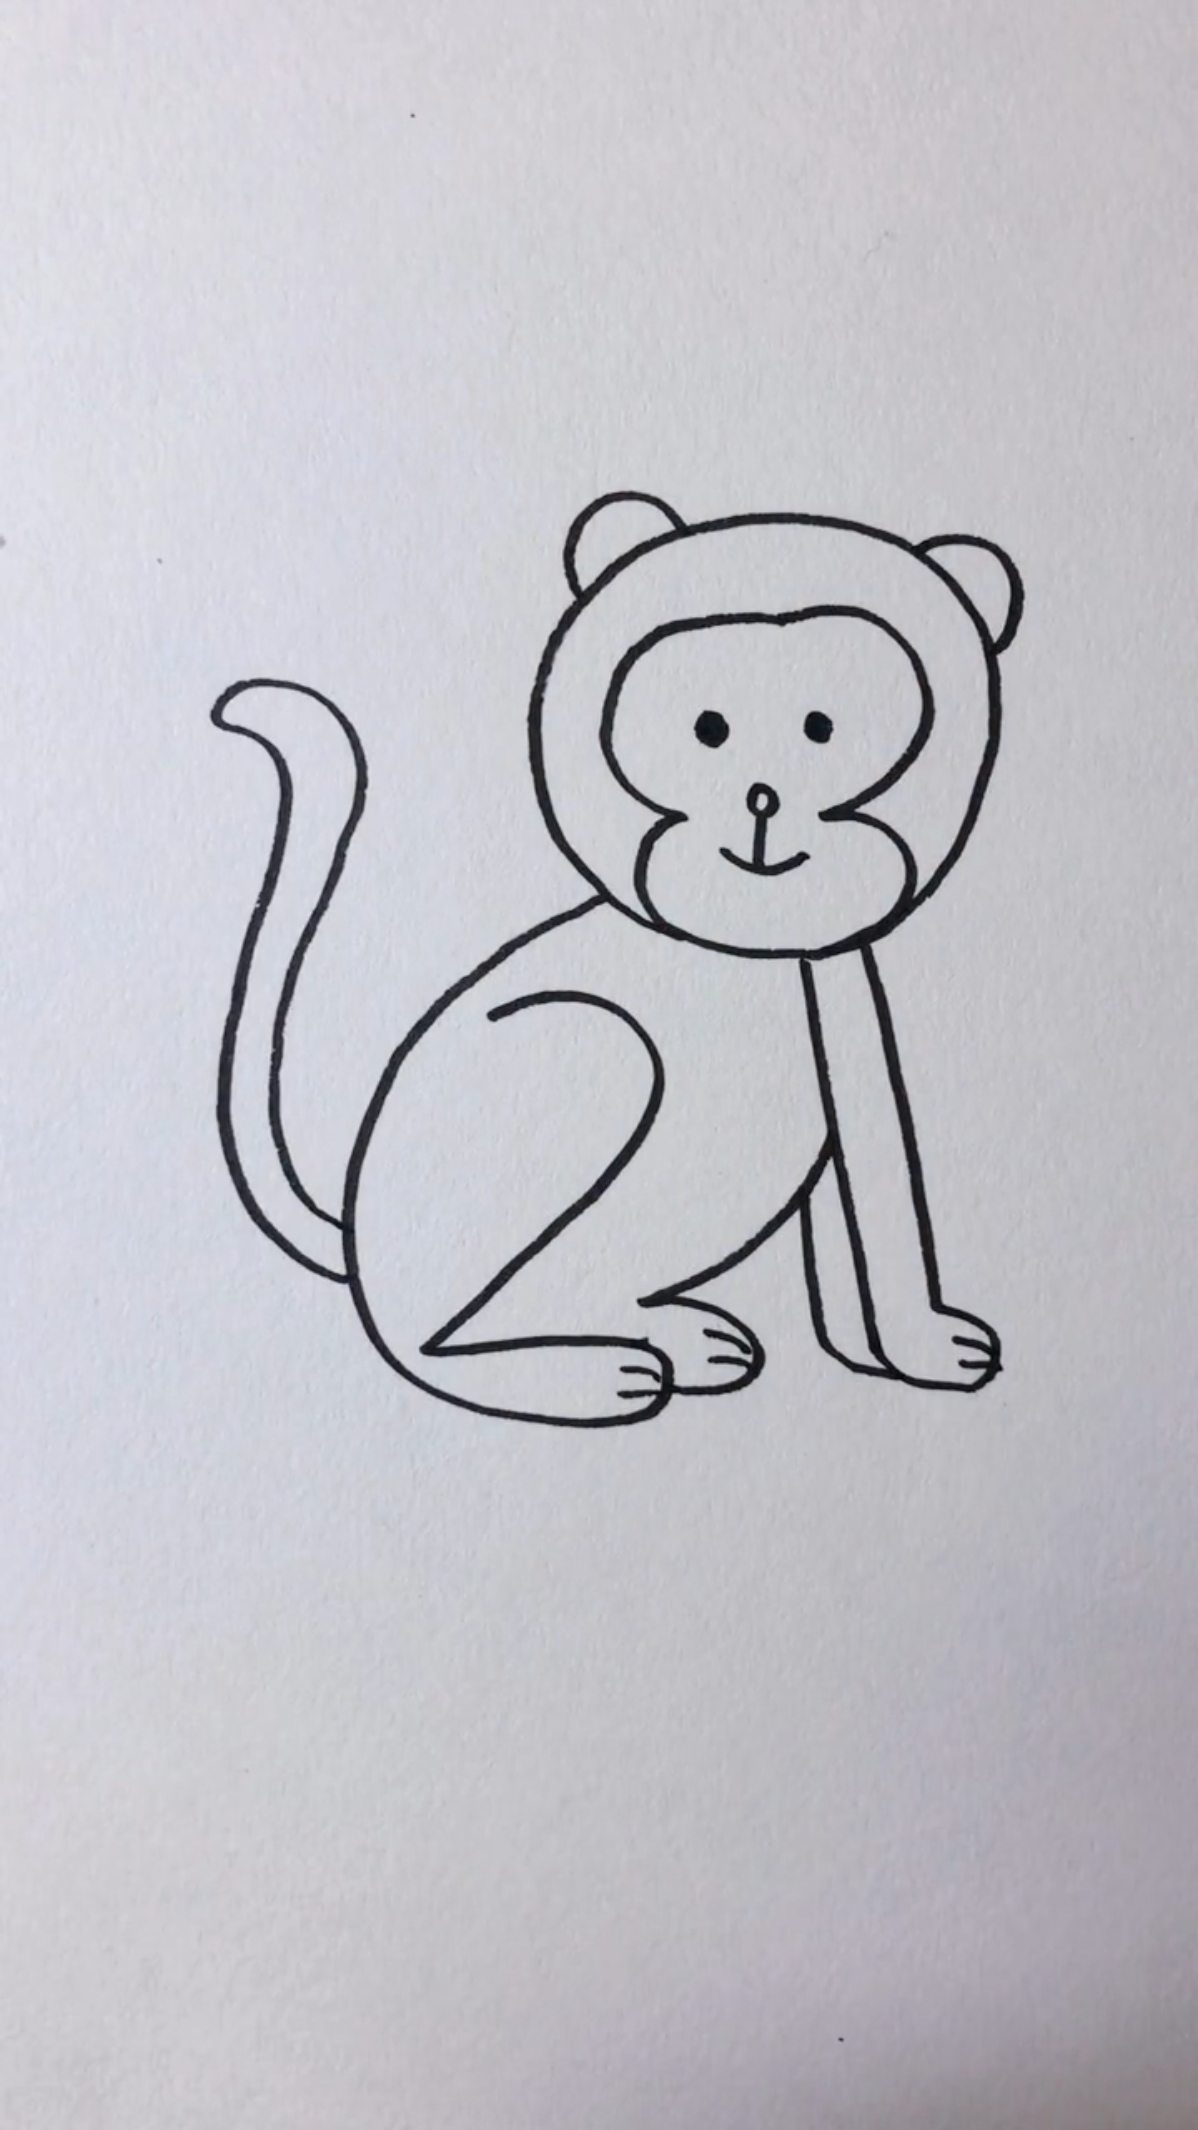 一步一步教你画小猴子图片